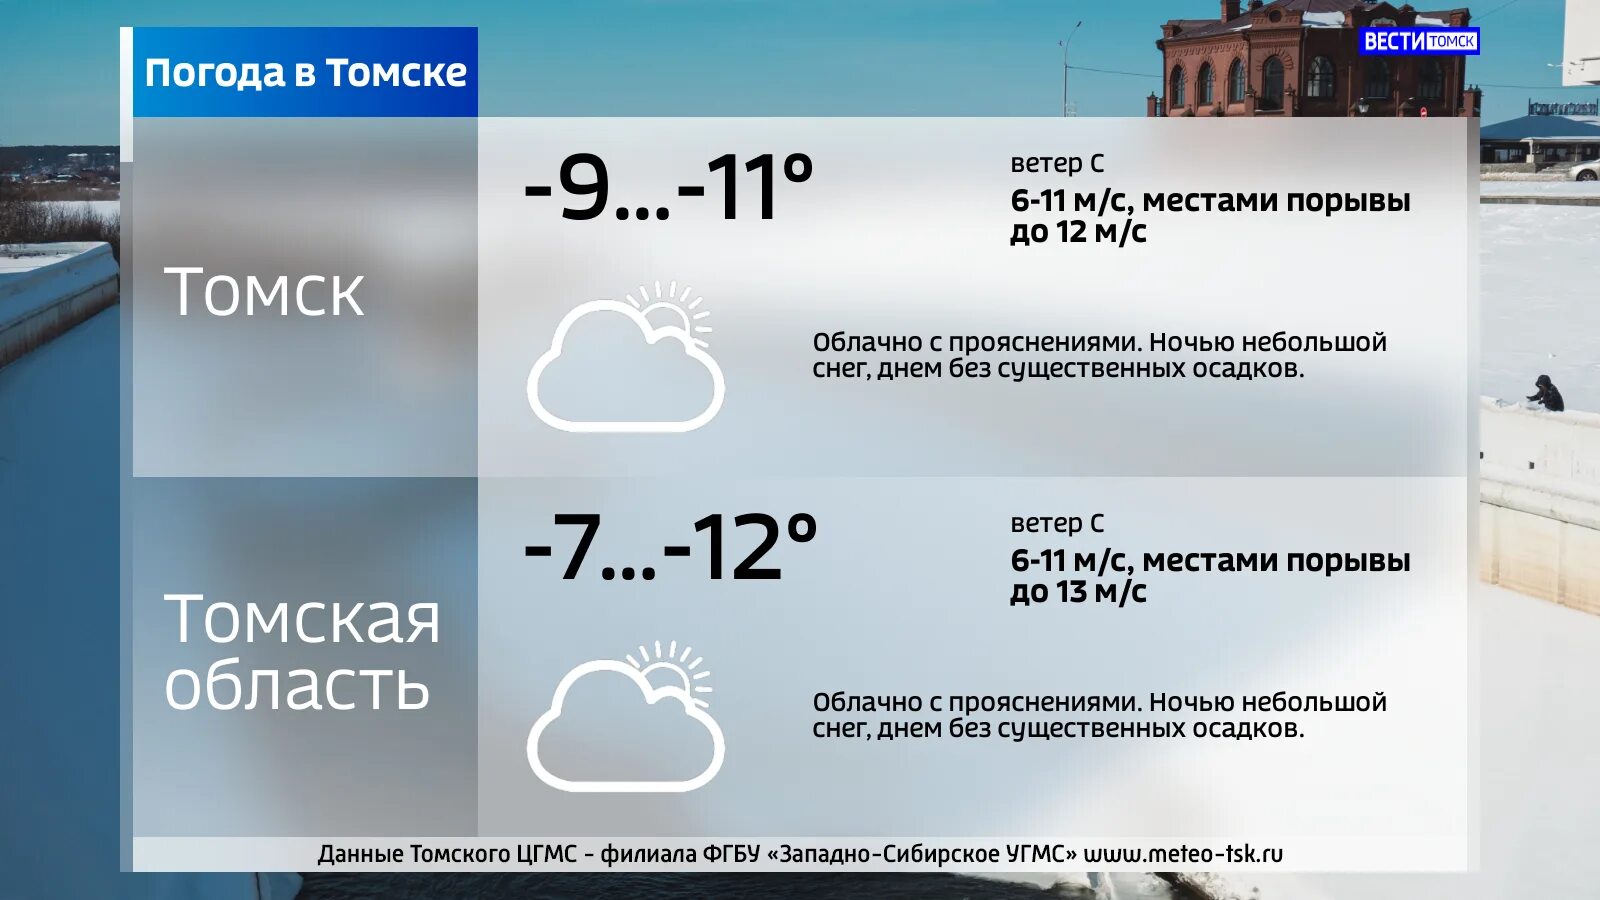 Погода в томском. Погода в Томске сегодня. Погода в Томске сейчас. Погода на сегодня и завтра. Погода в Томске на 10.